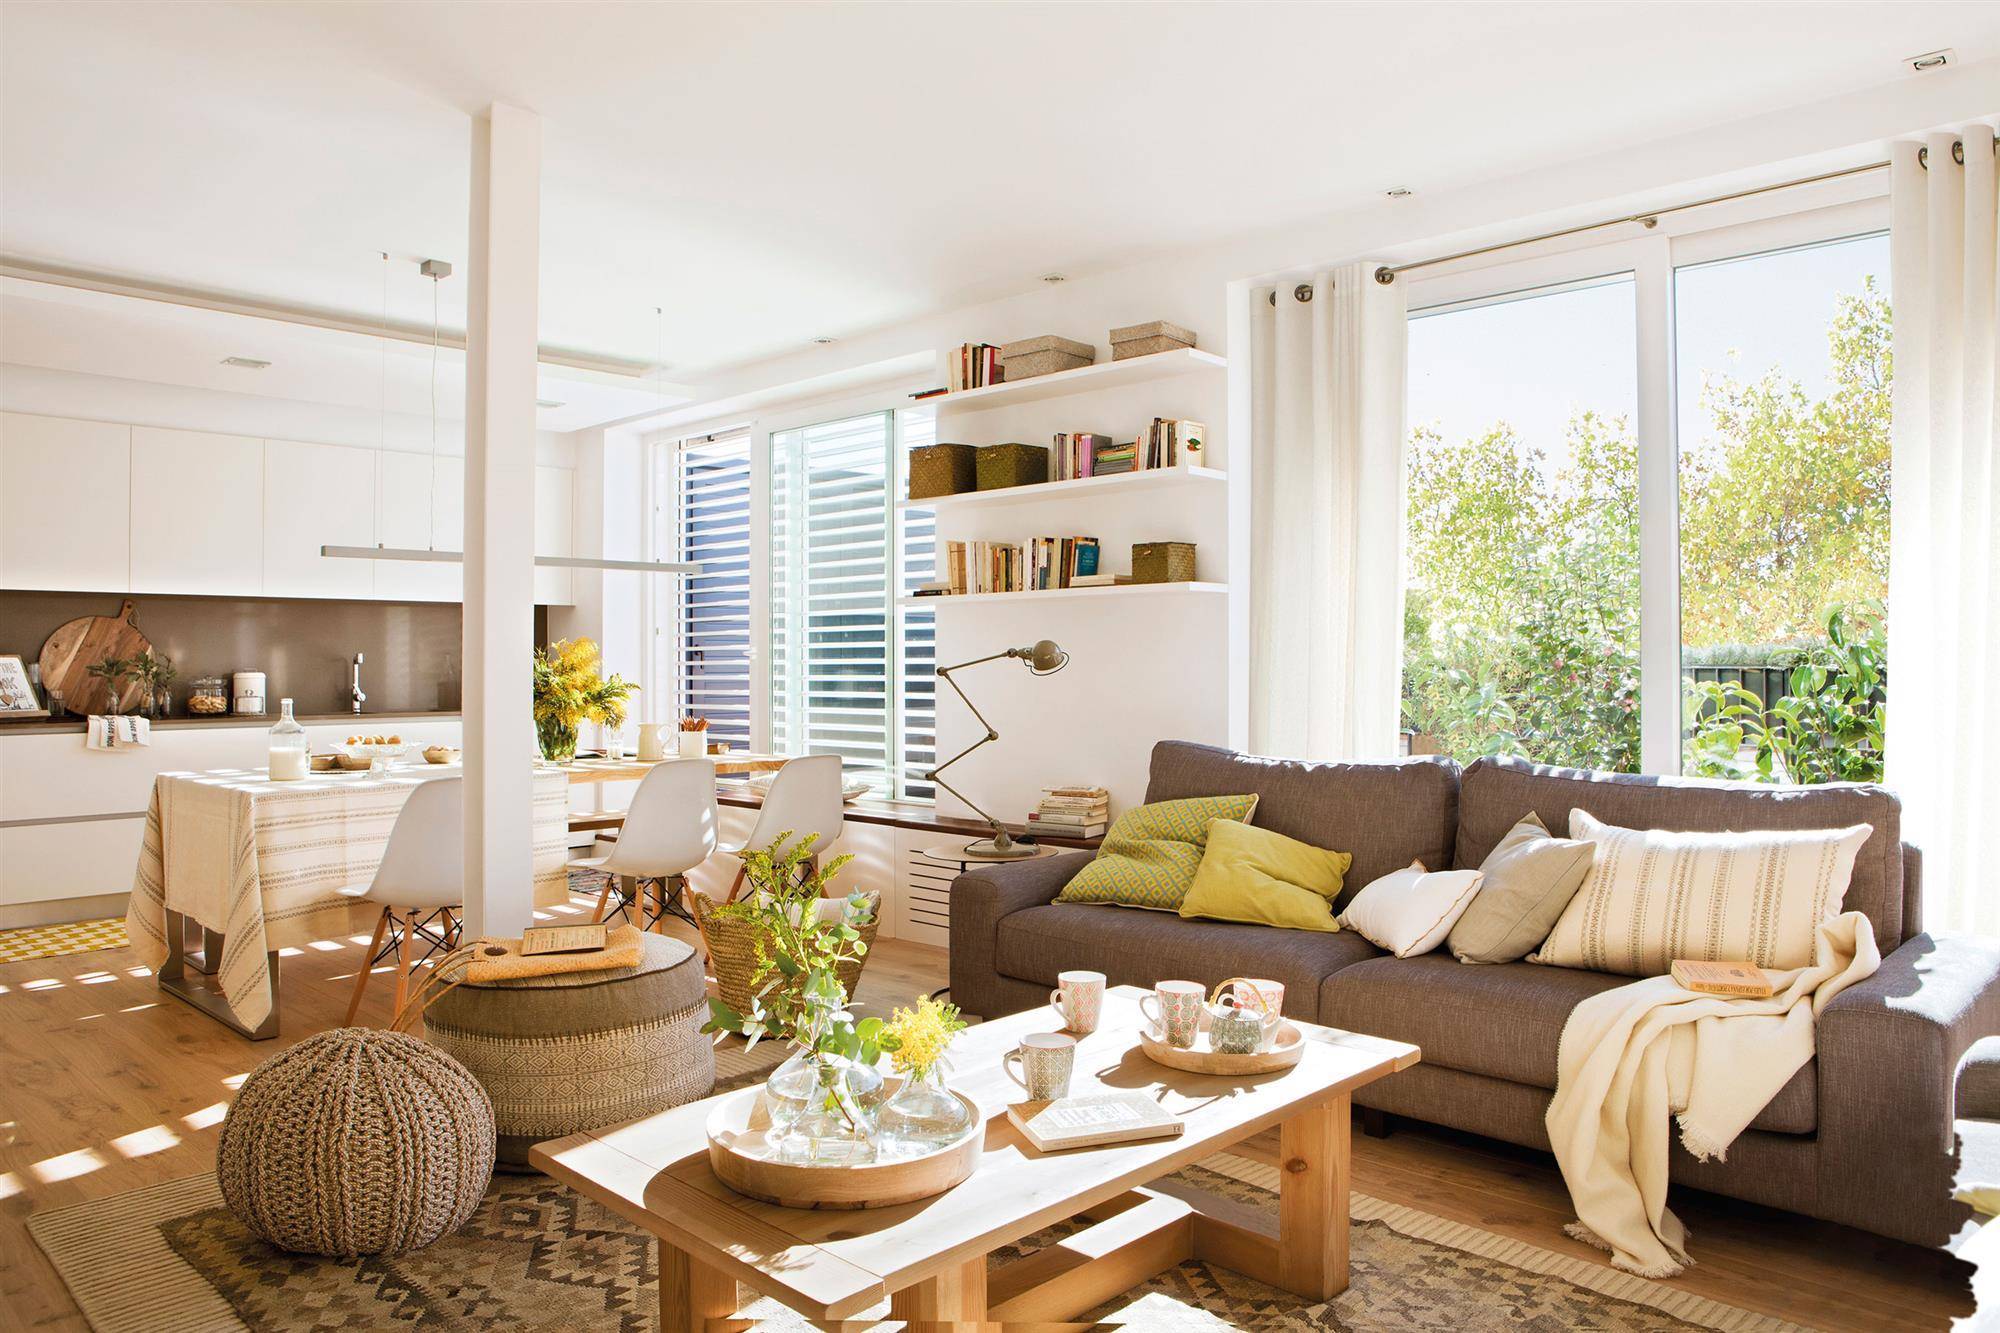 Un salón con terraza  en tonos blancos y con un gran sofá en marrón